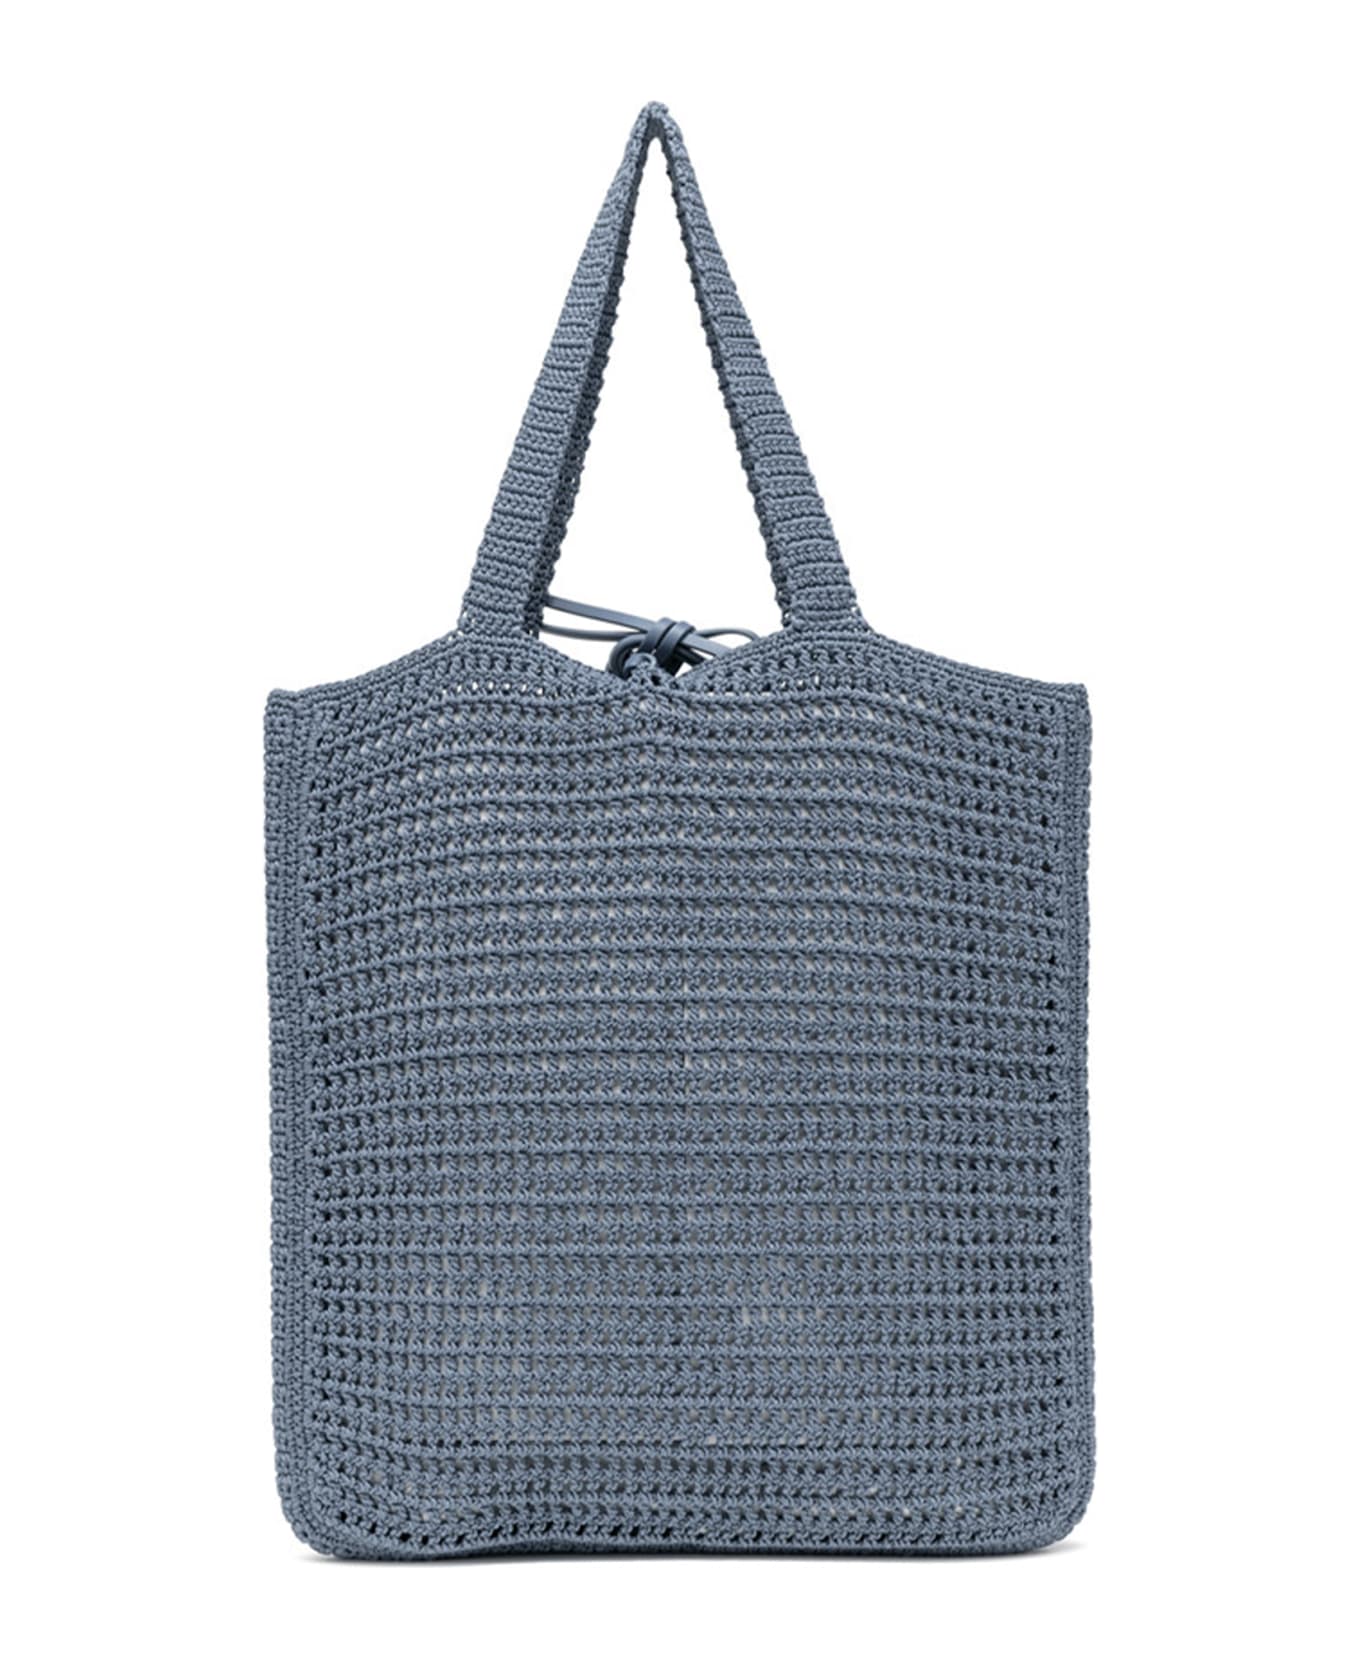 Gianni Chiarini Vittoria Bluette Shopping Bag In Crochet Fabric - ARTICO